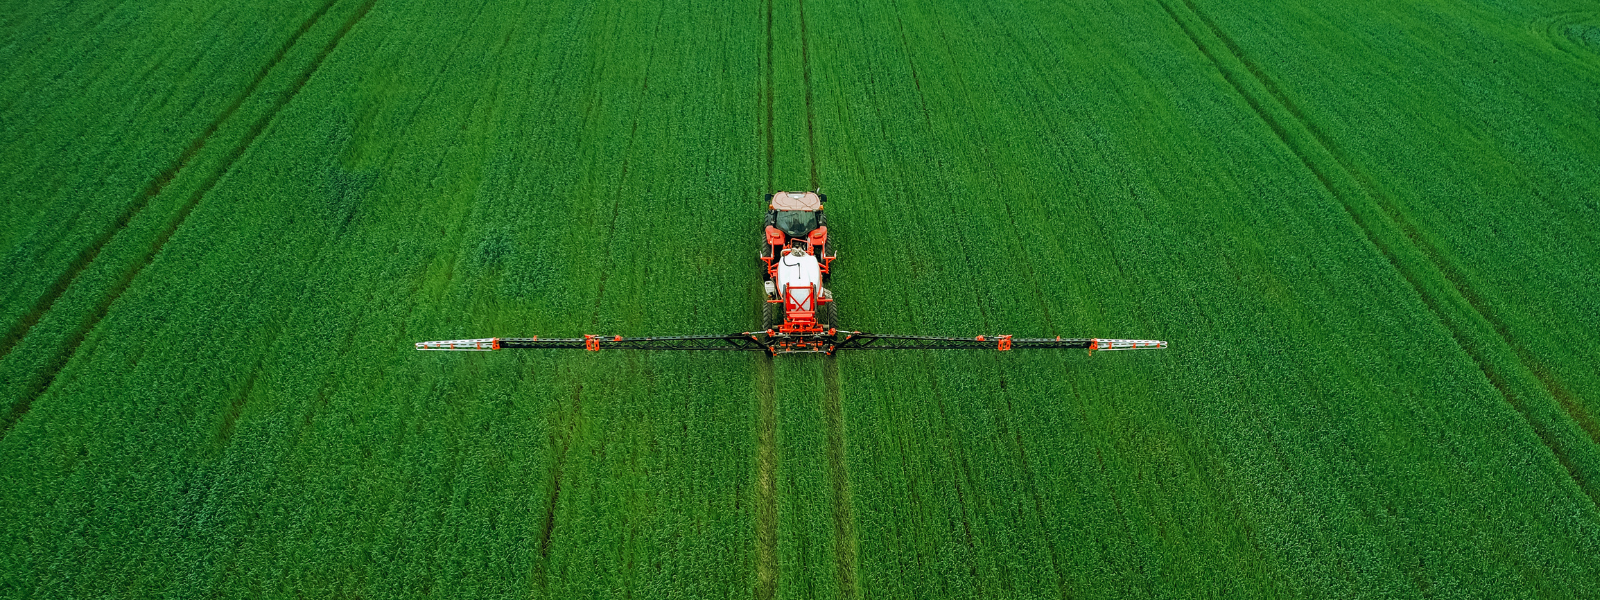 Tractor die een groen veld met pesticide bewerkt van bovenaf